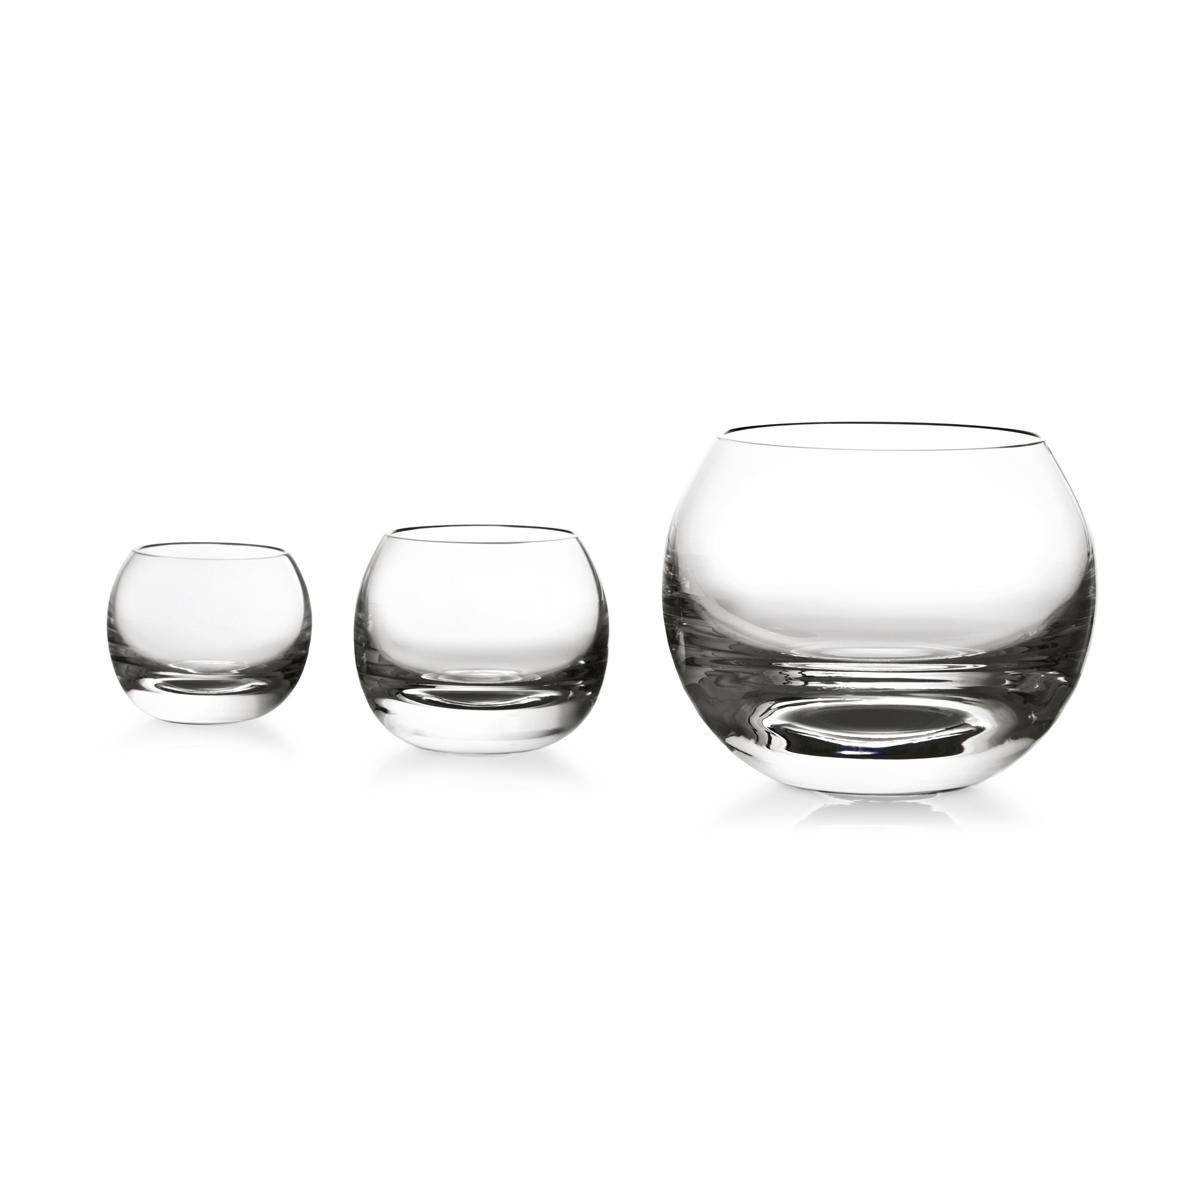 Likörglas aus geblasenem Glas in einer Form. Die Tulip-Kollektion ist eine Glaswarenfamilie von Aldo Cibic, der diese Stücke auf der Grenze zwischen klassischem und postmodernem Design entworfen hat. Die kühn-schlichten geometrischen Formen sind